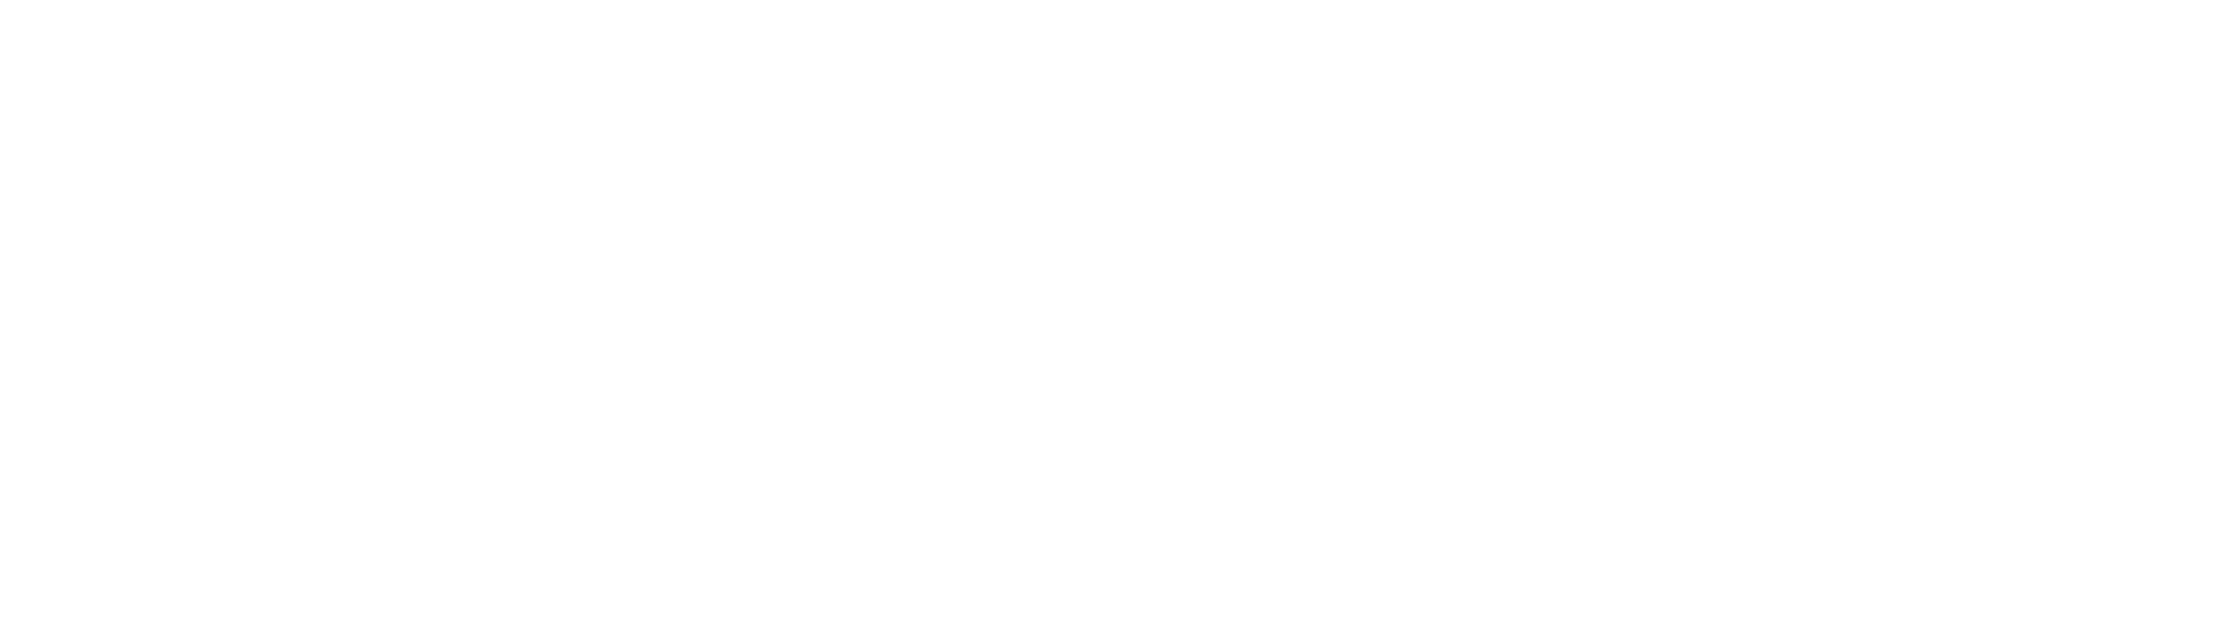 Logo de empresa blanco